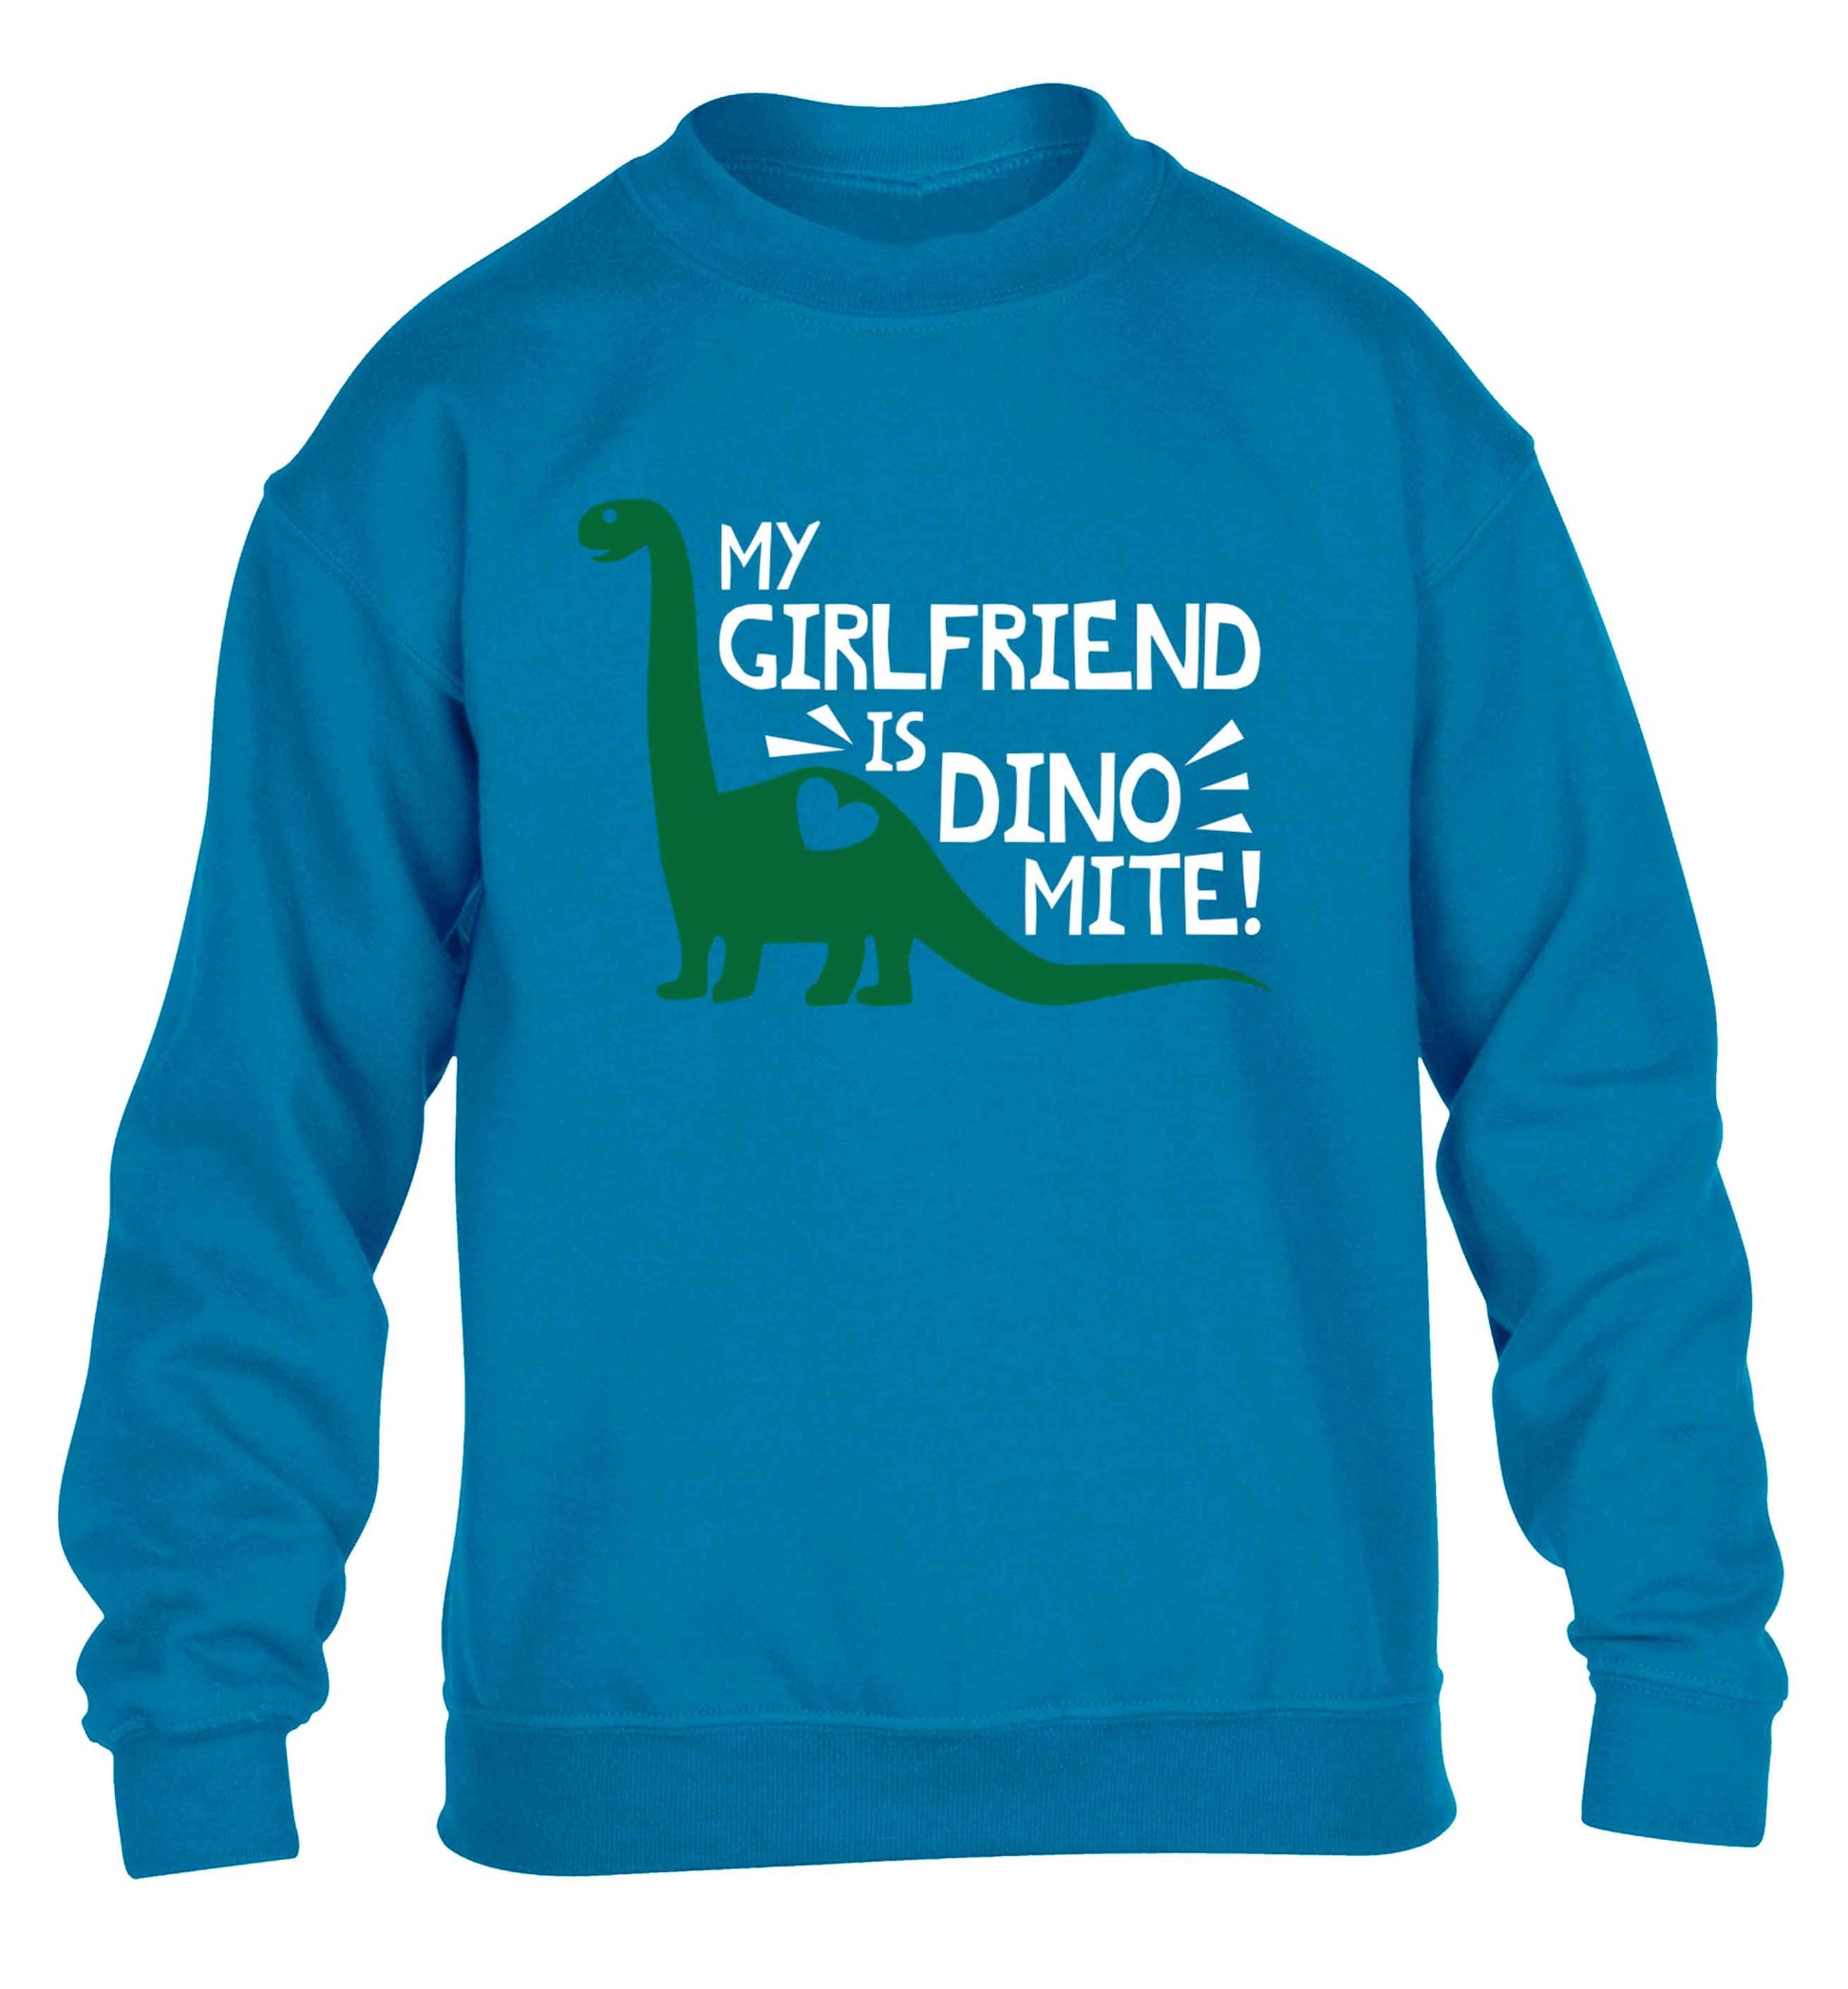 My girlfriend is dinomite! children's blue sweater 12-13 Years